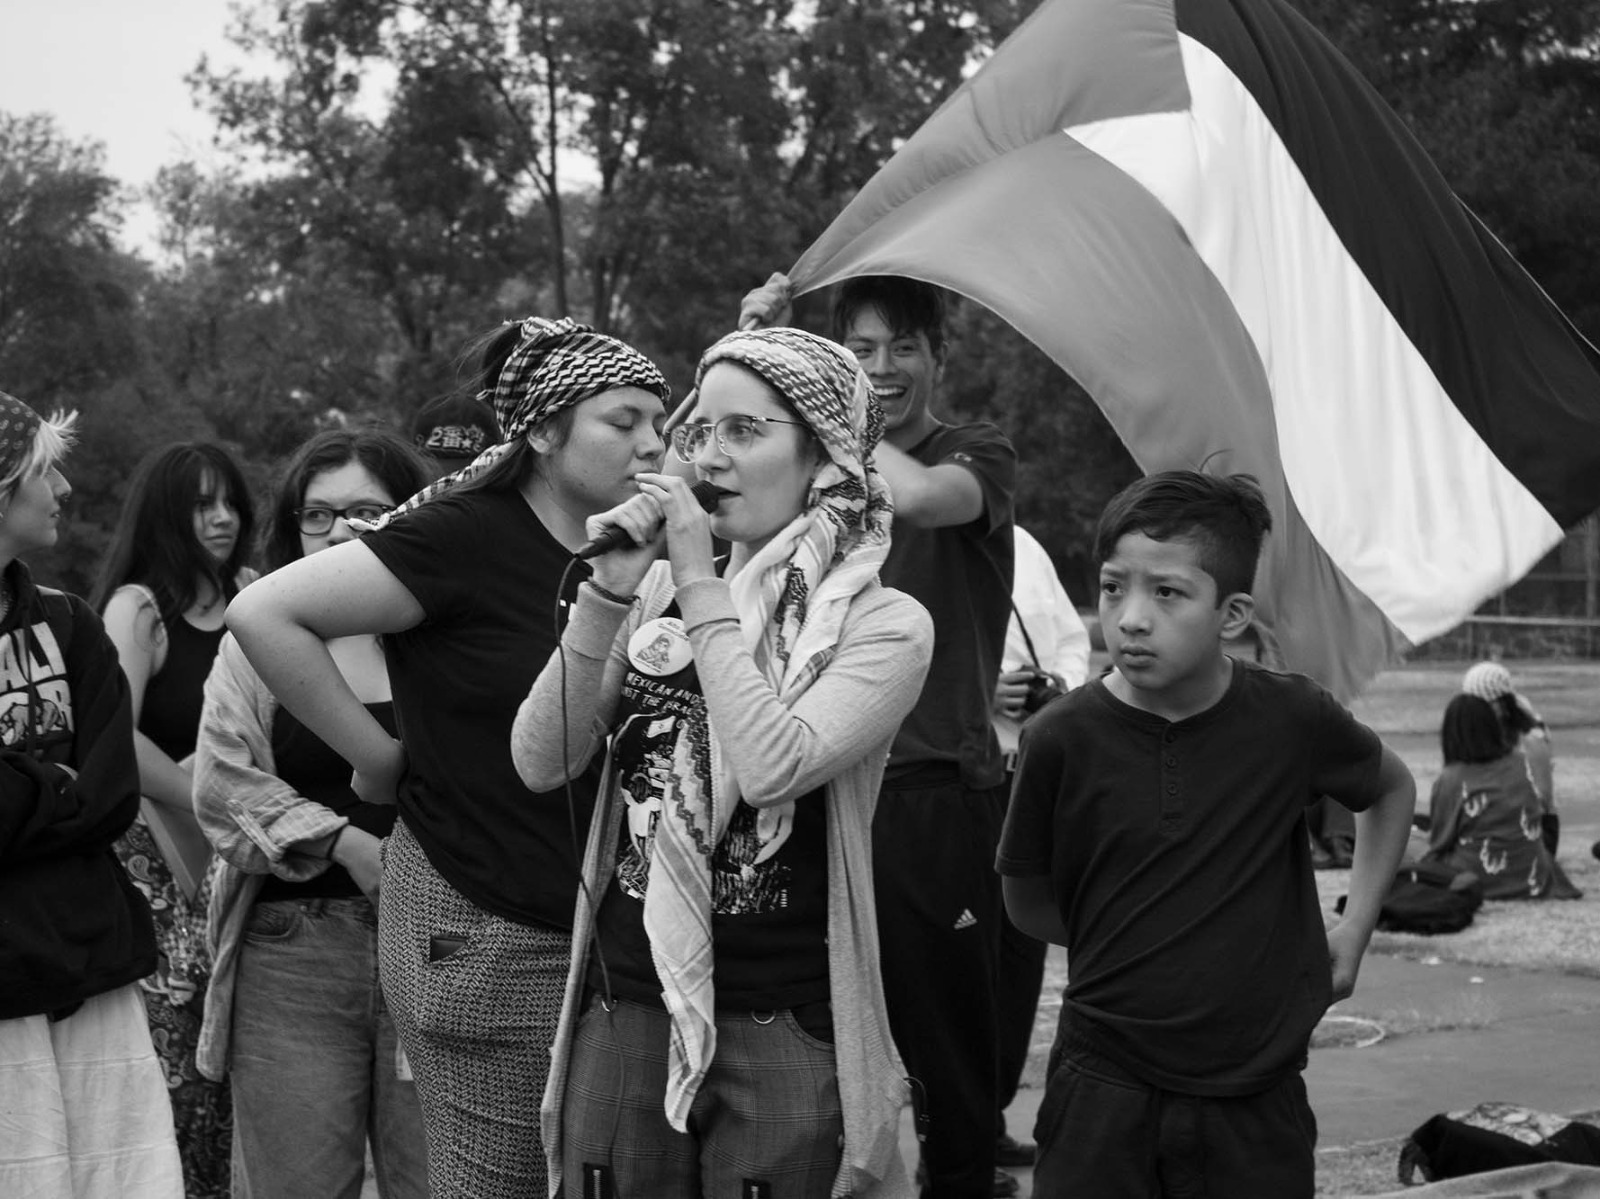 Los estudiantes de la Universidad Nacional Autónoma de México (UNAM) continúan la protesta en el campamento por el genocidio en Palestina y exigen a Rectoría romper relaciones con Israel. La Escuela Normal Rural “Isidro Burgos” en Ayotzinapa, se une a la causa.